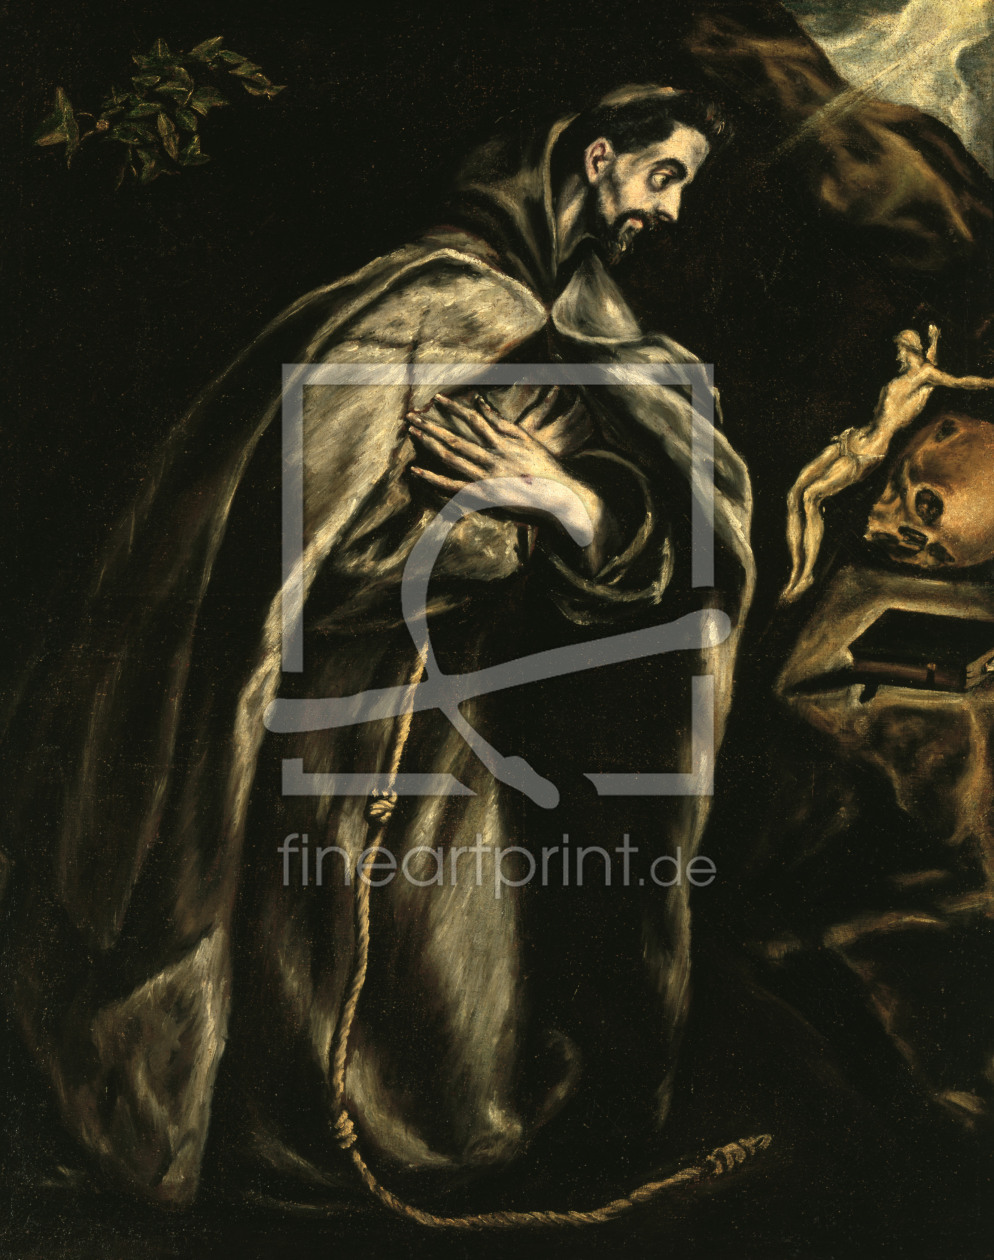 Bild-Nr.: 30000870 El Greco / Francis of Assisi erstellt von Greco, El (Domenikos Theotokopoulos)